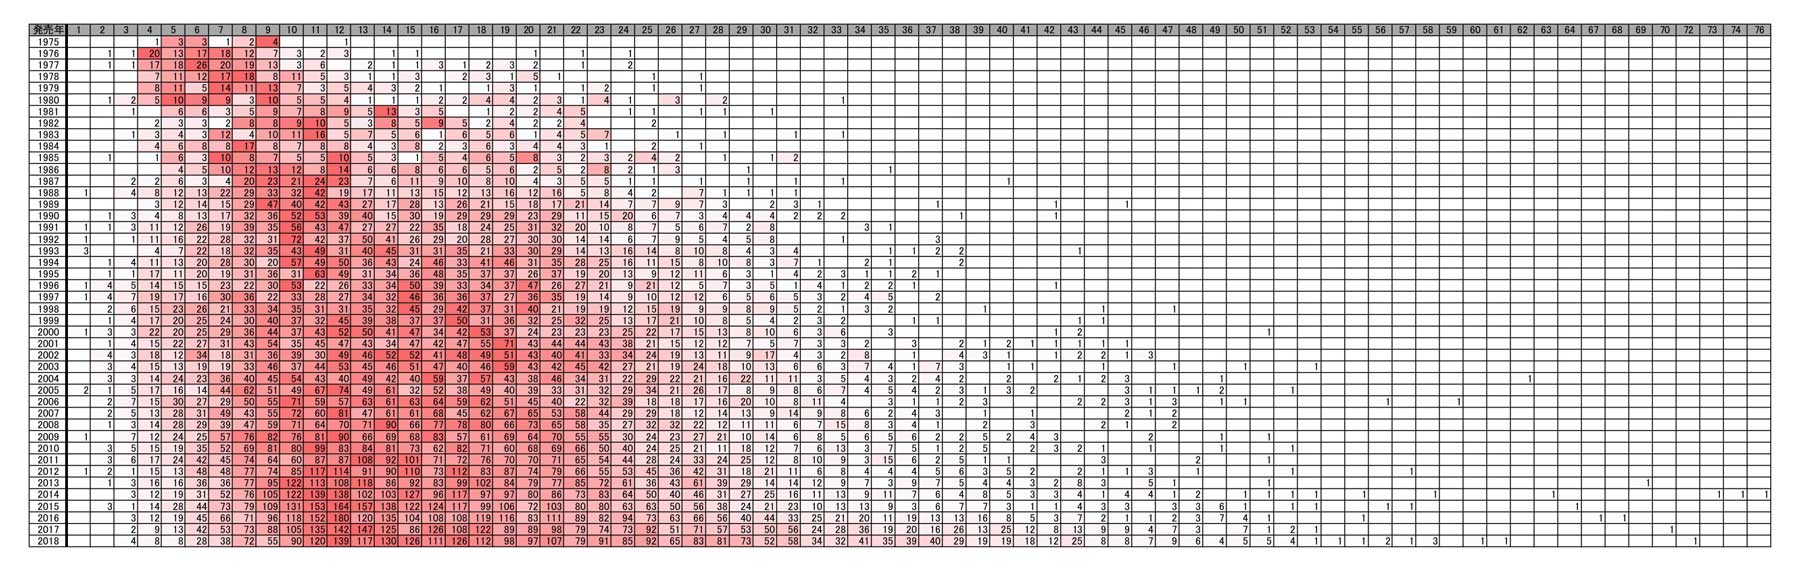 ラノベのタイトルが長くなったのはいつ頃か タイトル文字数の長さを年別分布にした図表が興味深い ねとらぼ